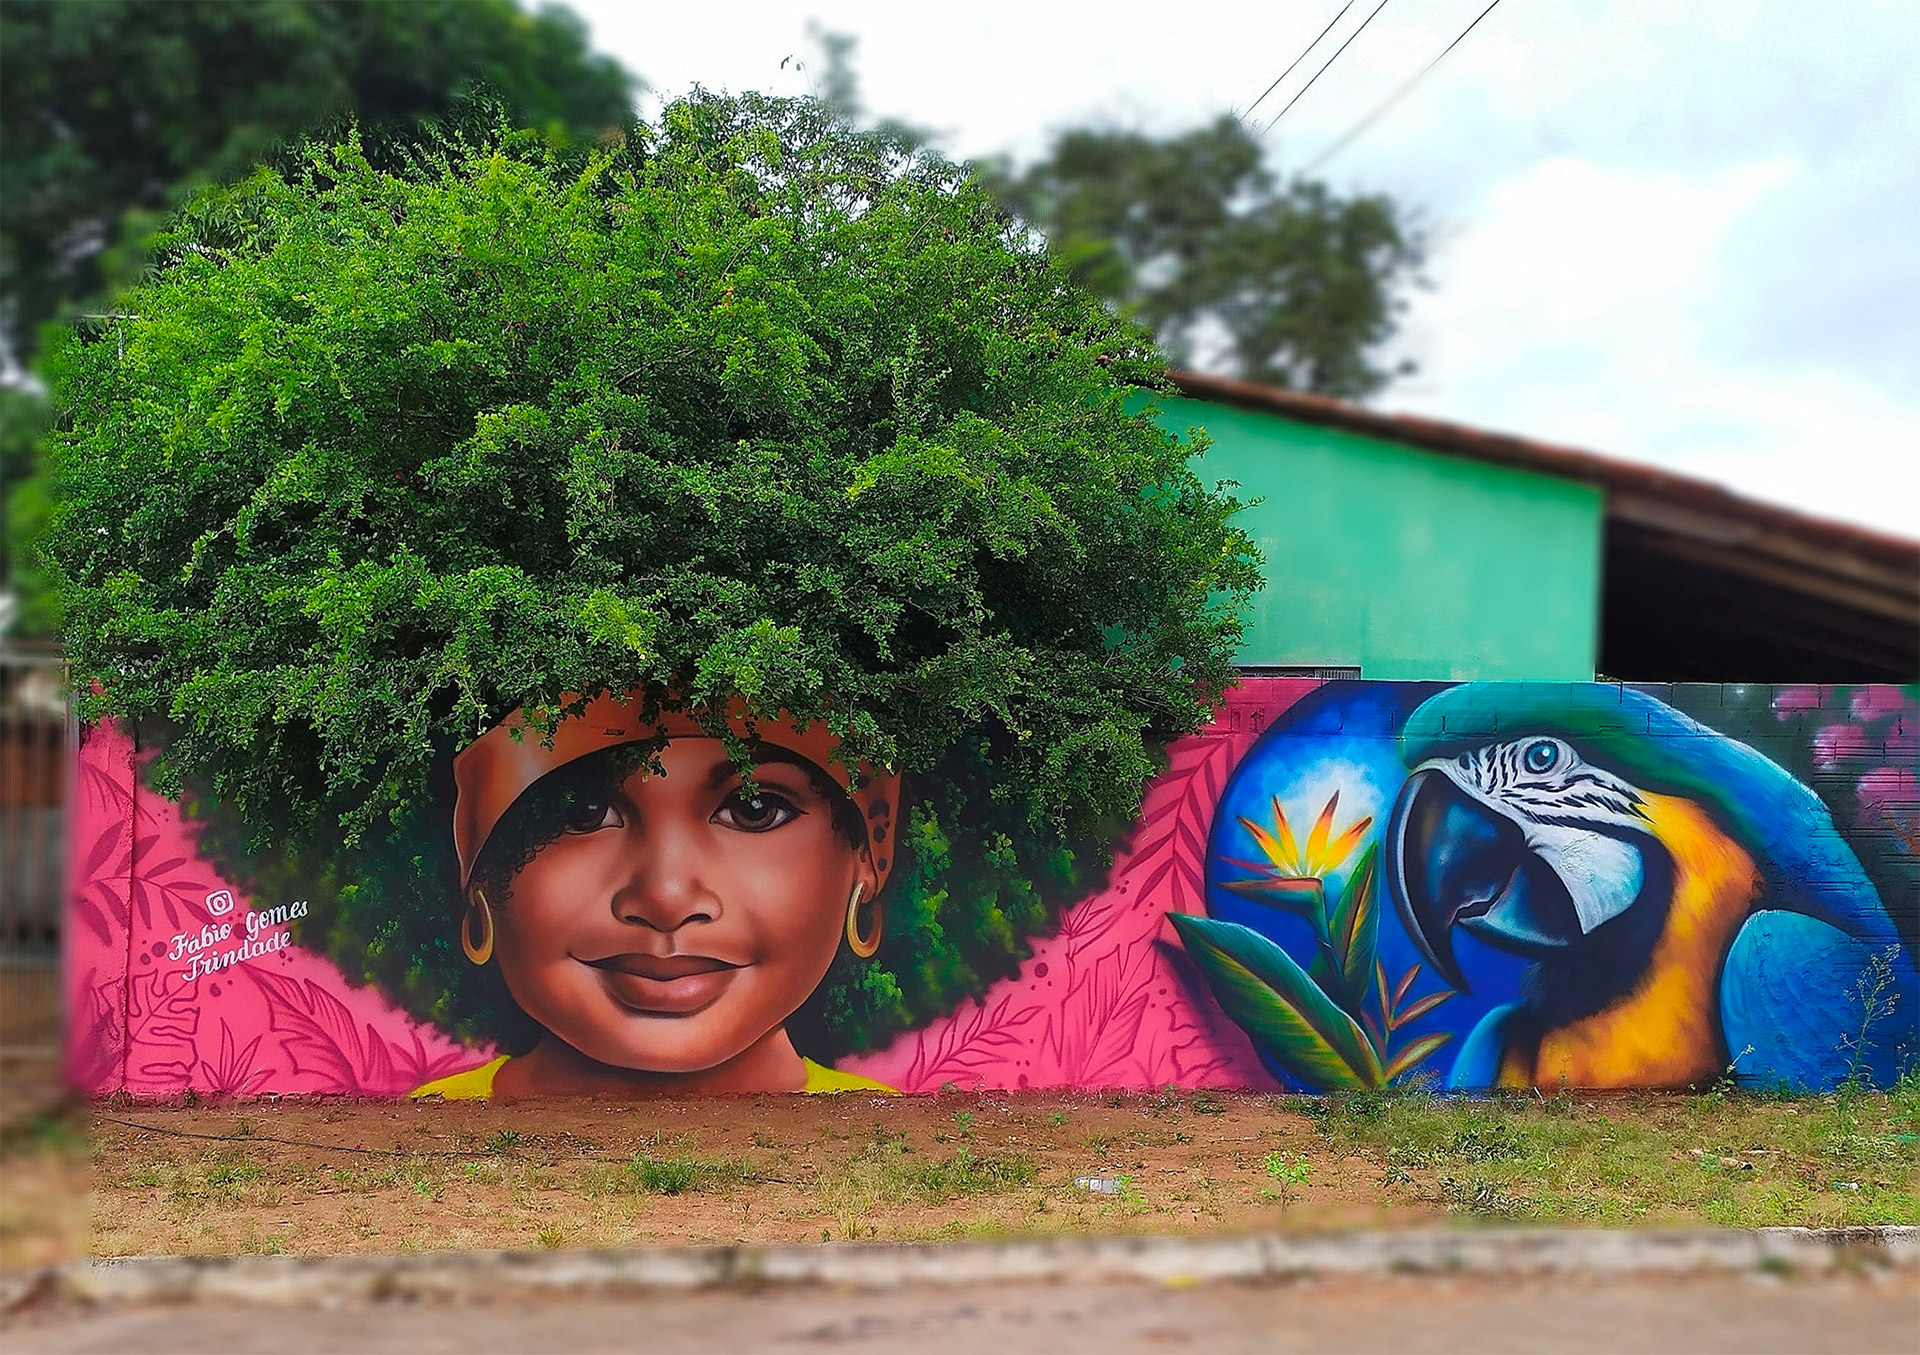 以树木作为头发！Fábio Gomes Trindade想象力丰富的街头壁画作品